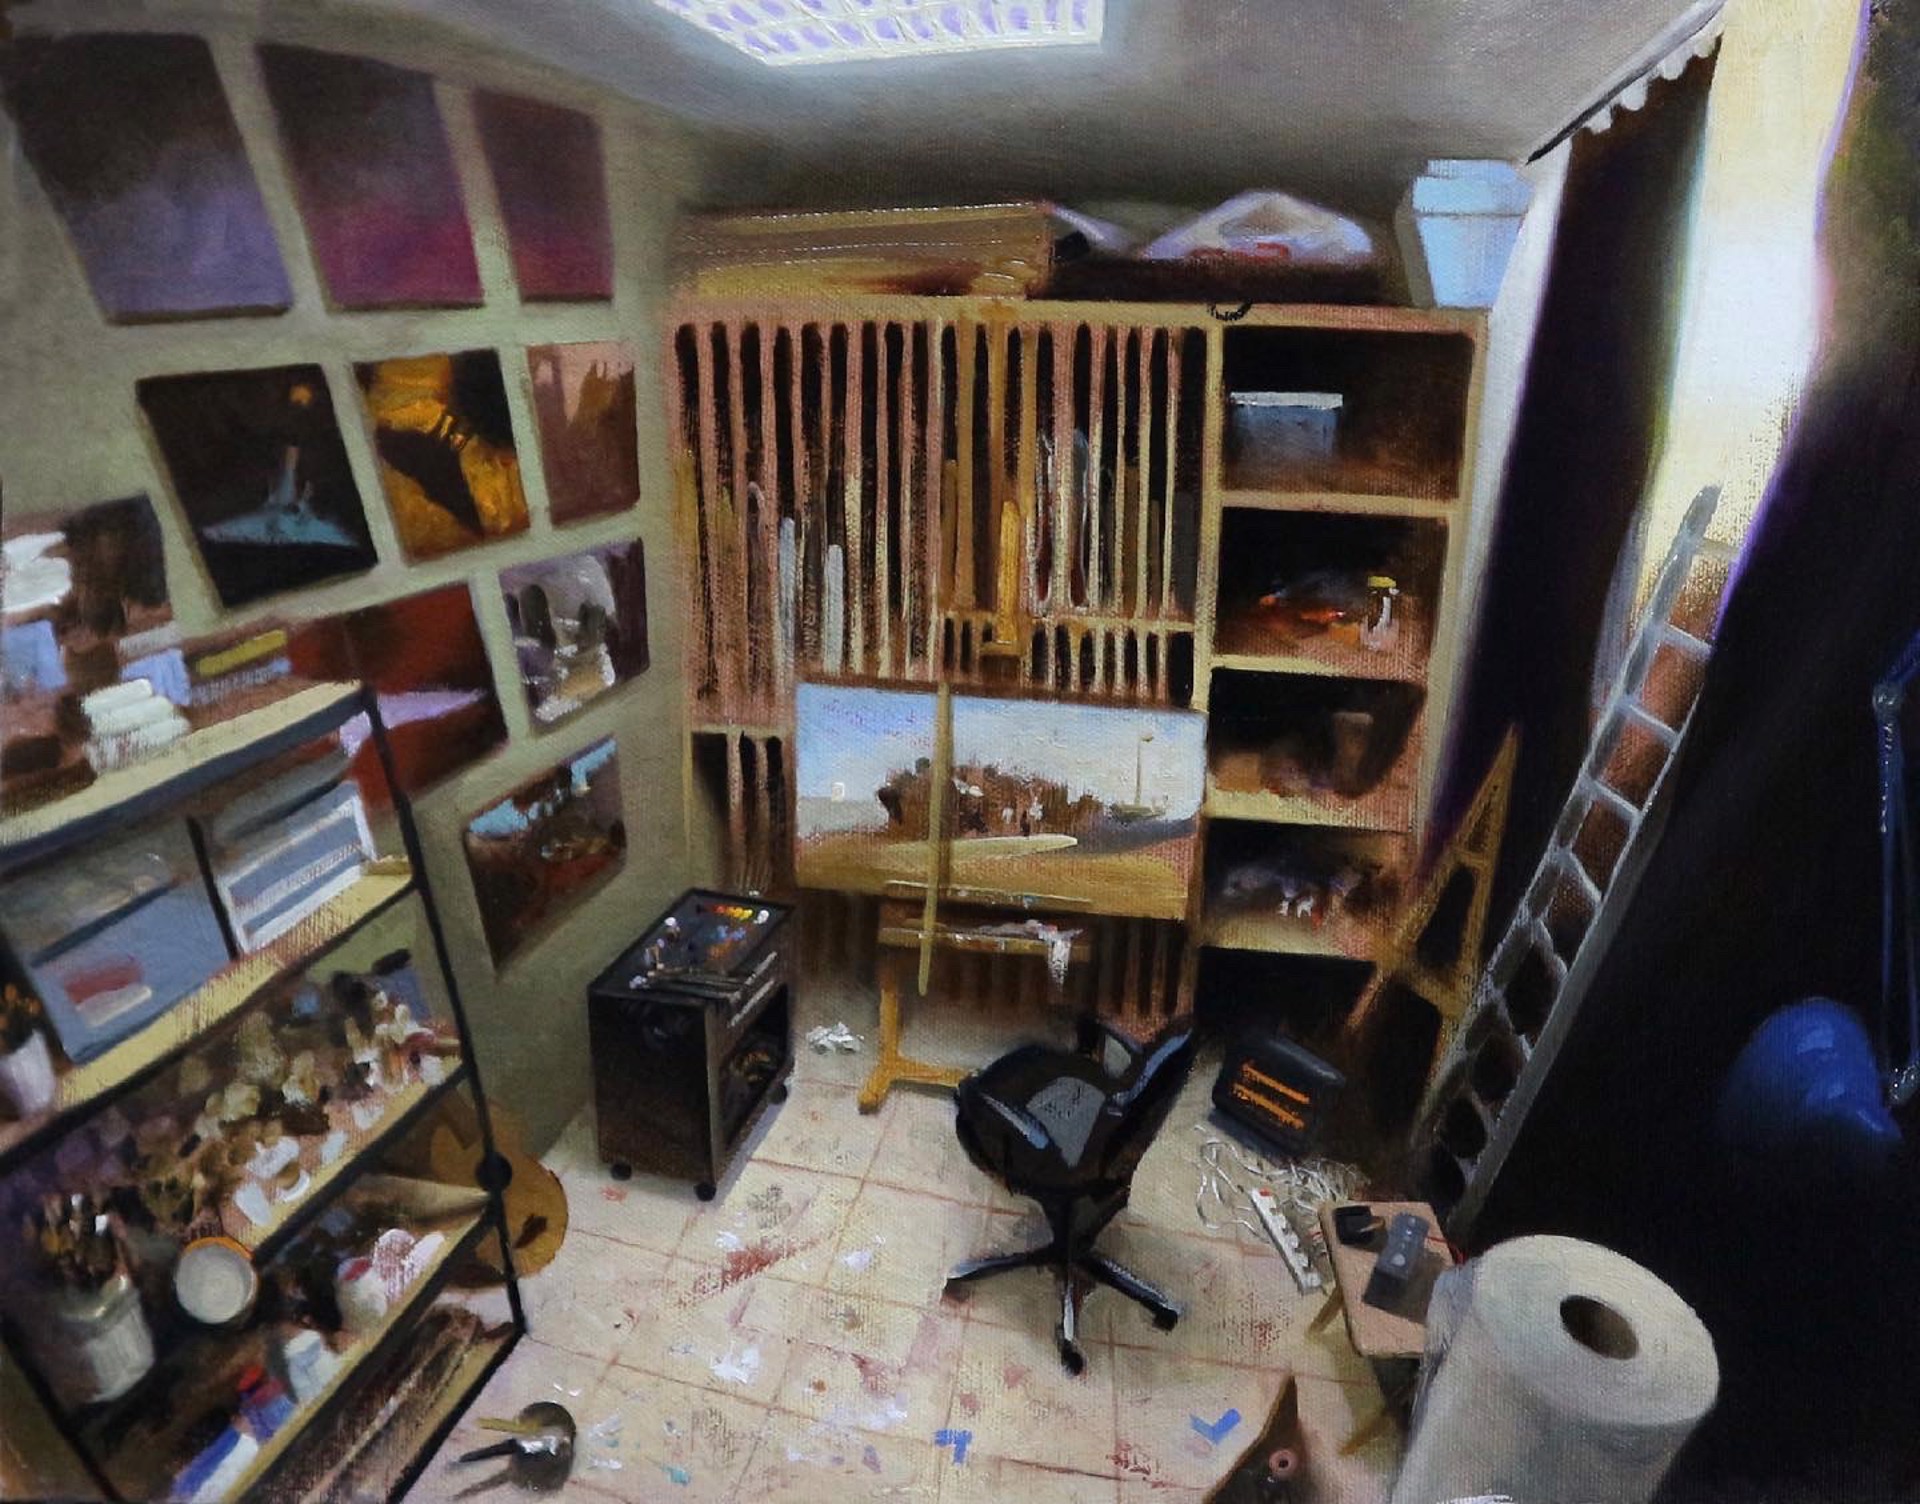 The Artist's Studio by Diego Glazer